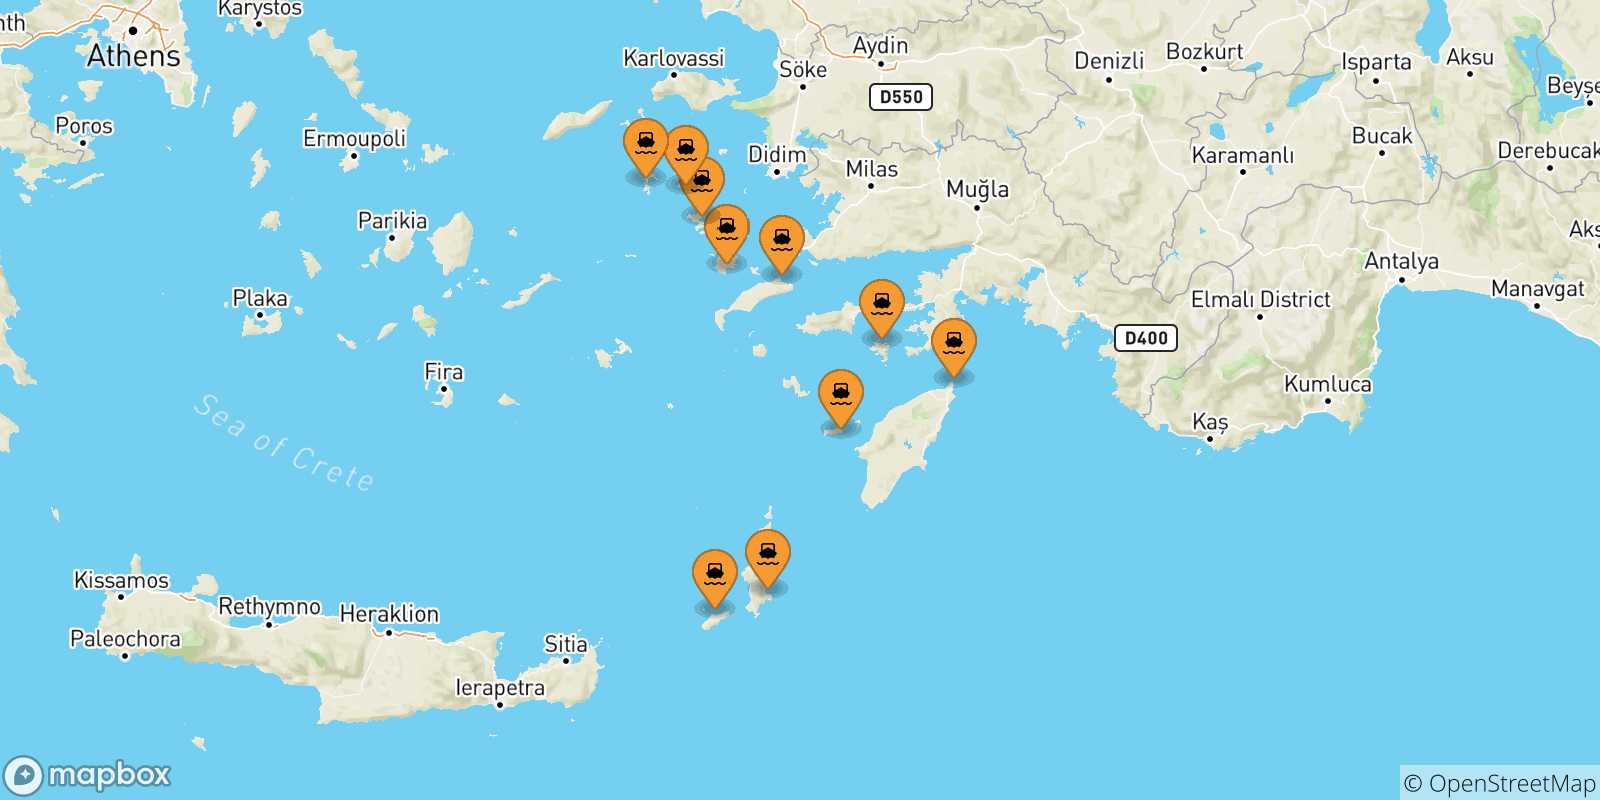 Mappa delle possibili rotte tra le Isole Dodecaneso e Karpathos